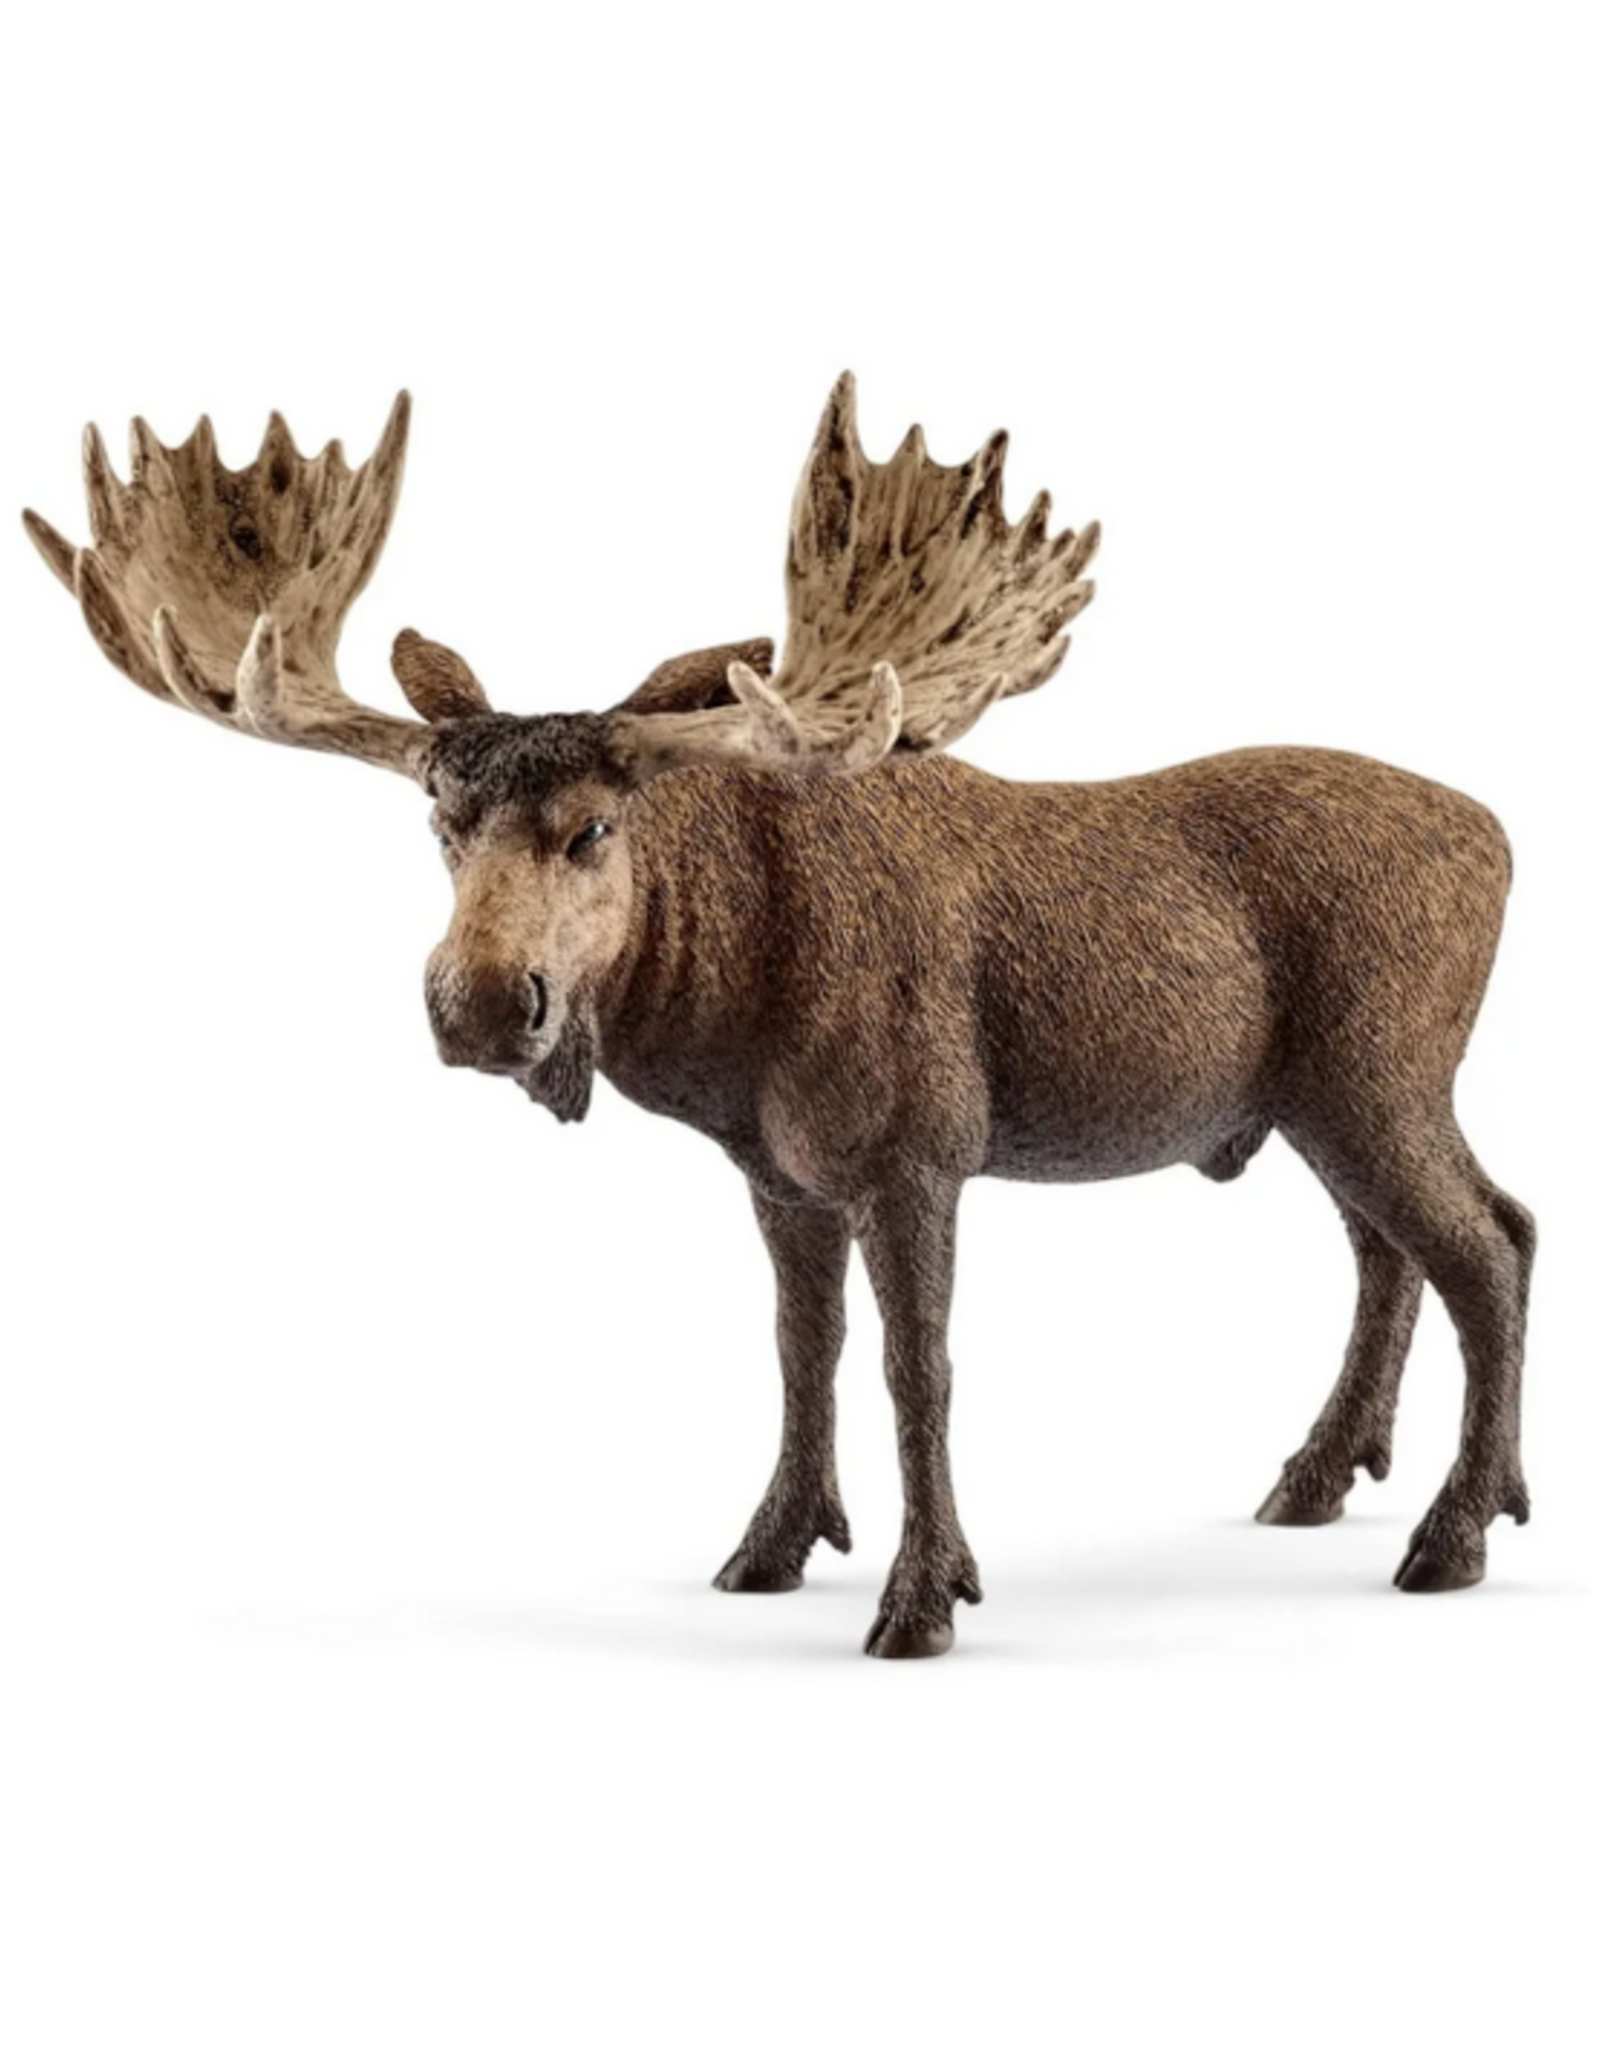 Schleich Schleich - Wild Life - 14781 - Moose Bull